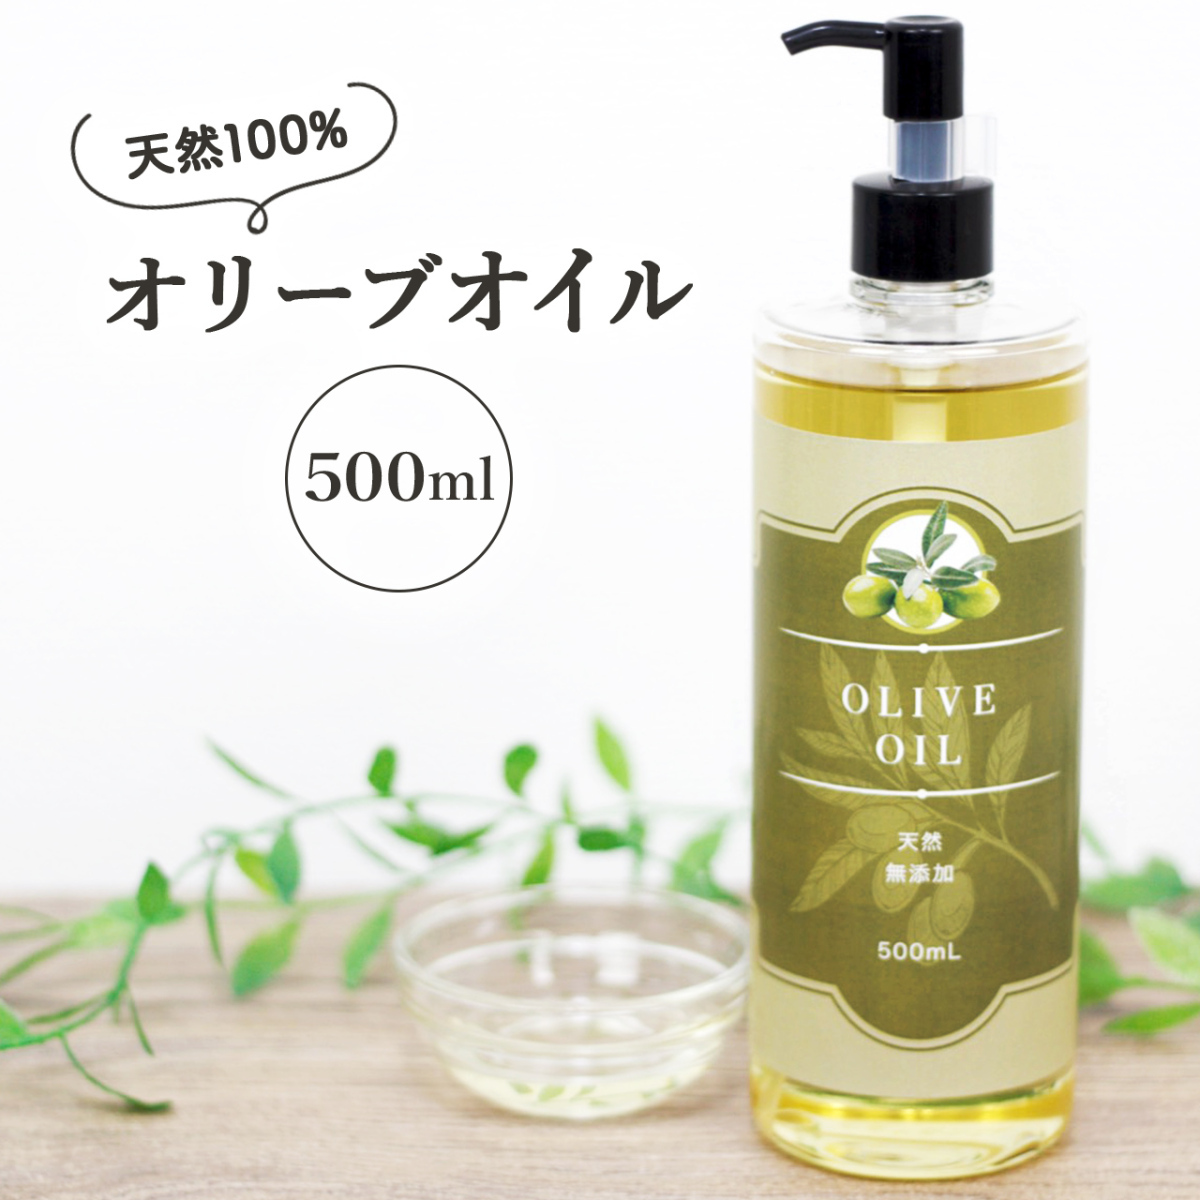 Натуральное добавление -Бесплатное оливковое масло 500 мл насоса